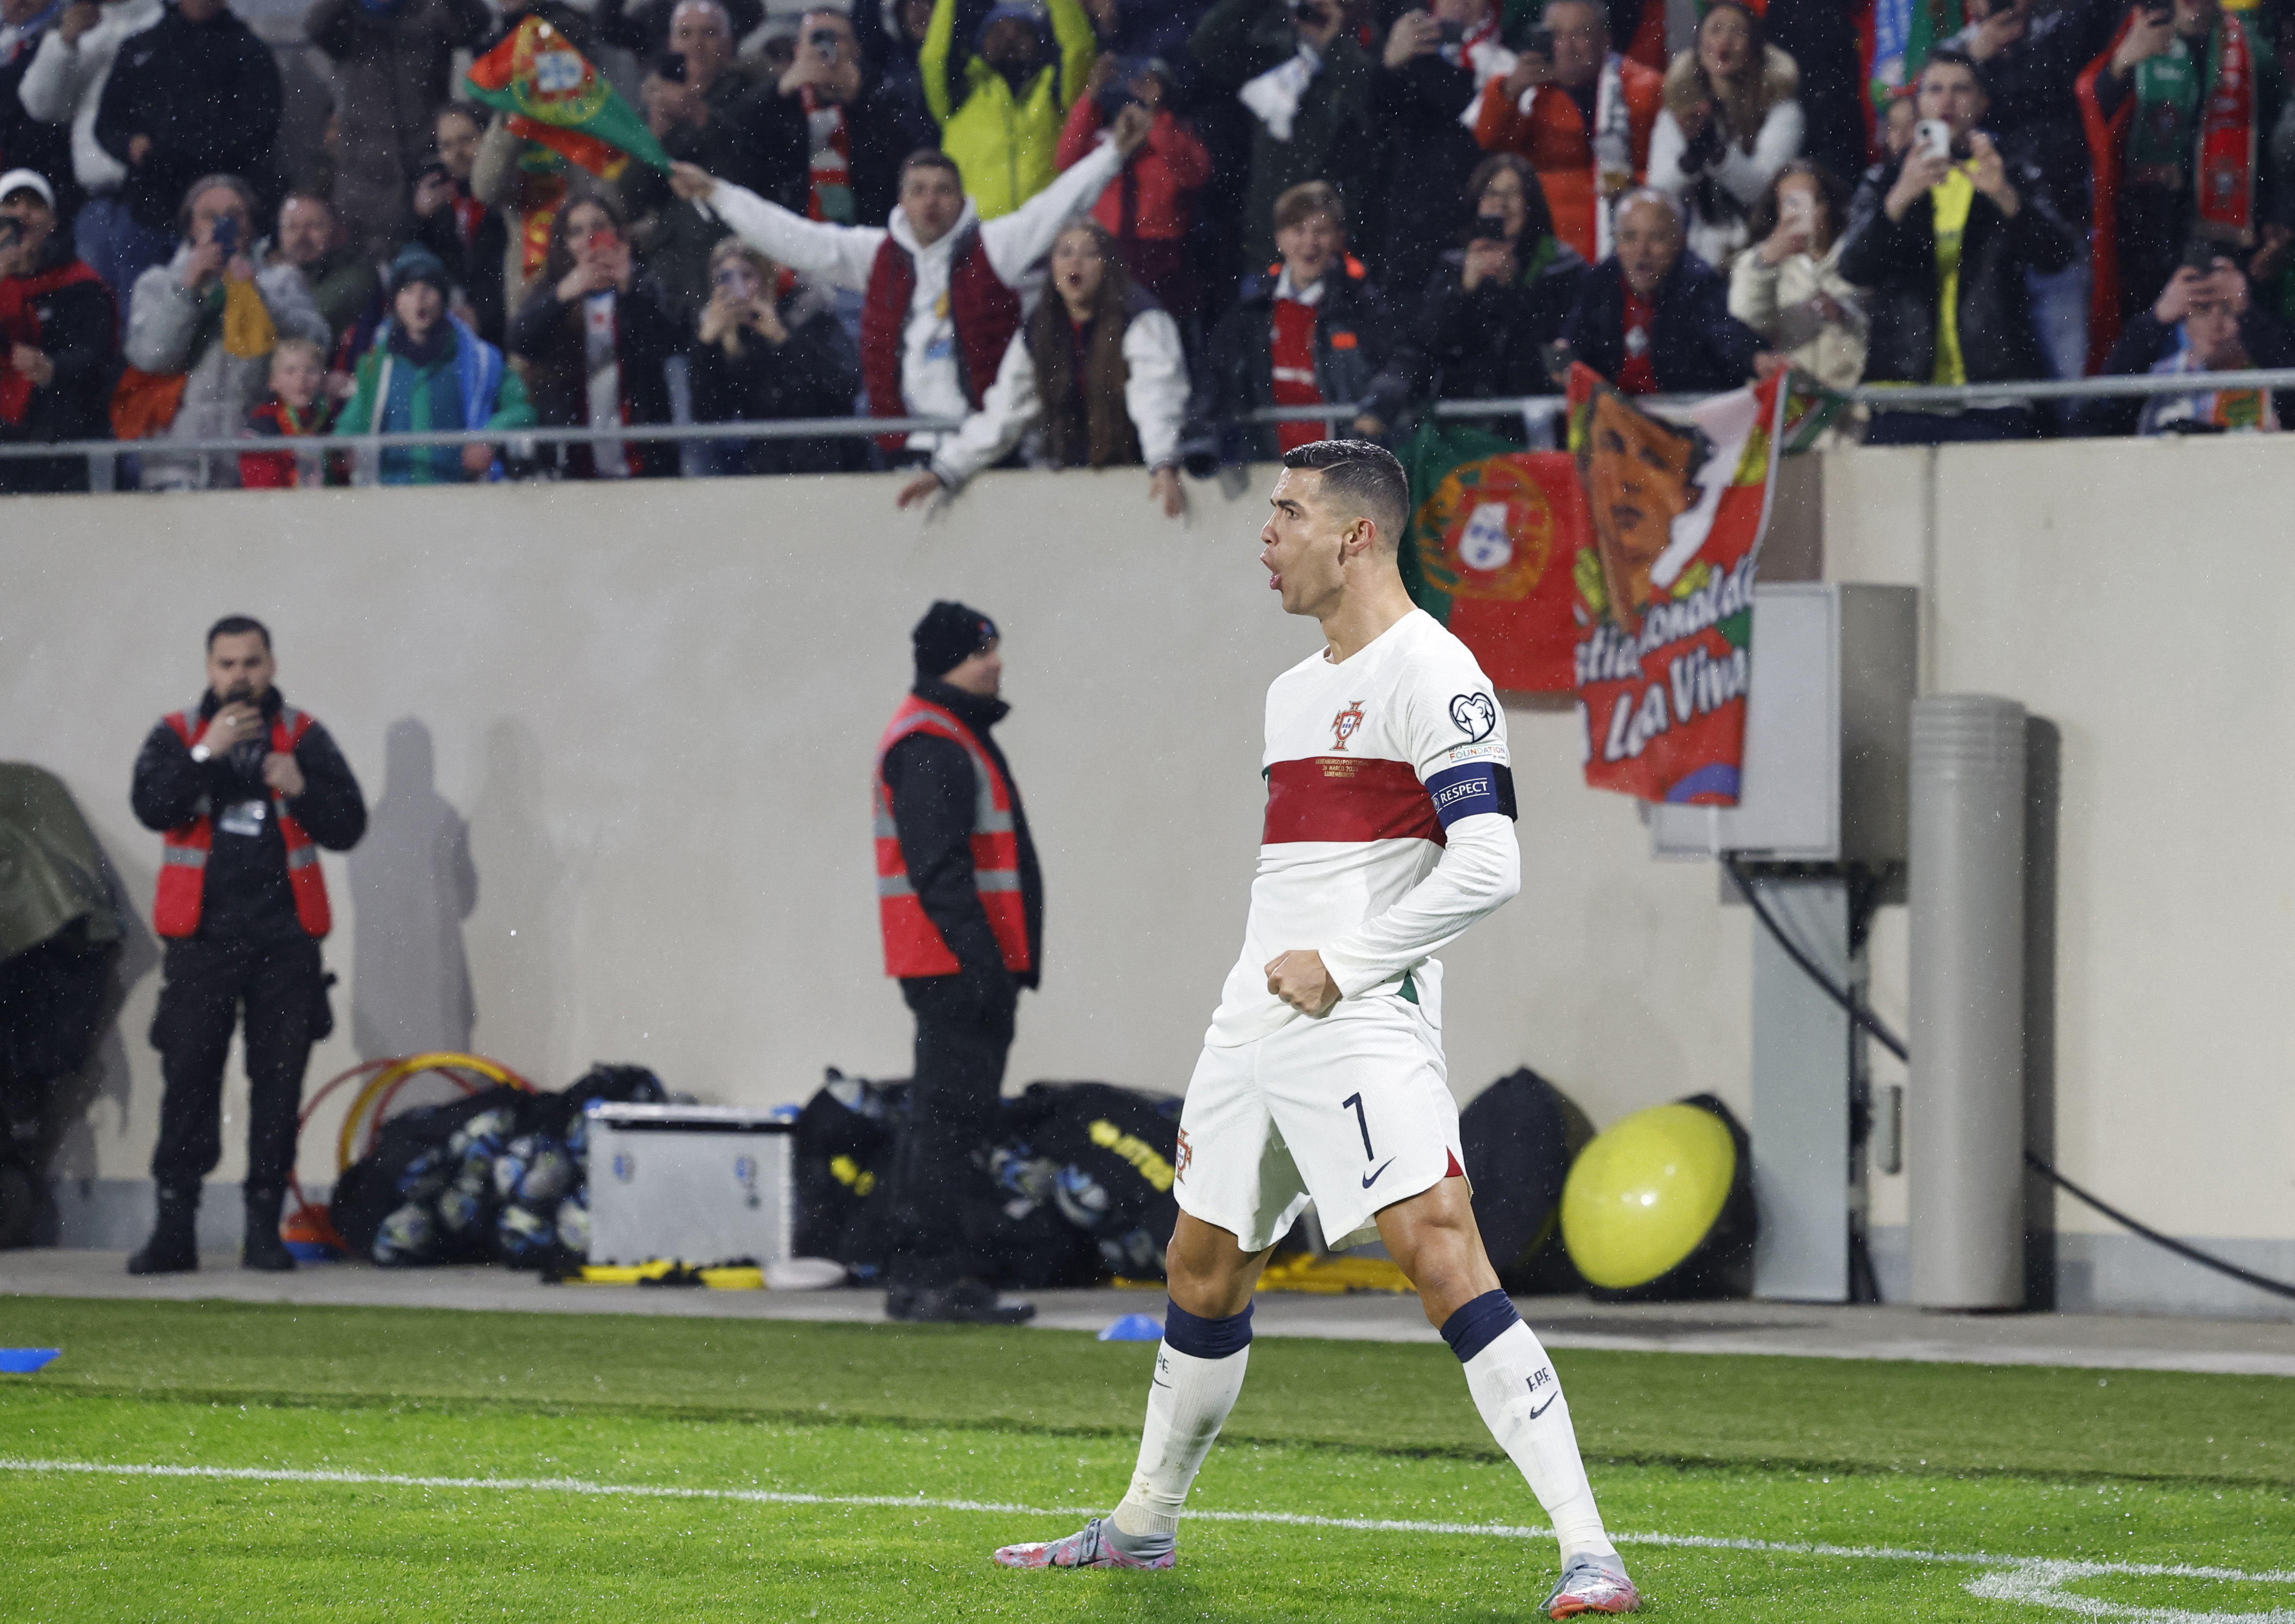 Dos goles y burla al árbitro tras ser amonestado: el partido de Cristiano Ronaldo en el 6-0 de Portugal a Luxemburgo